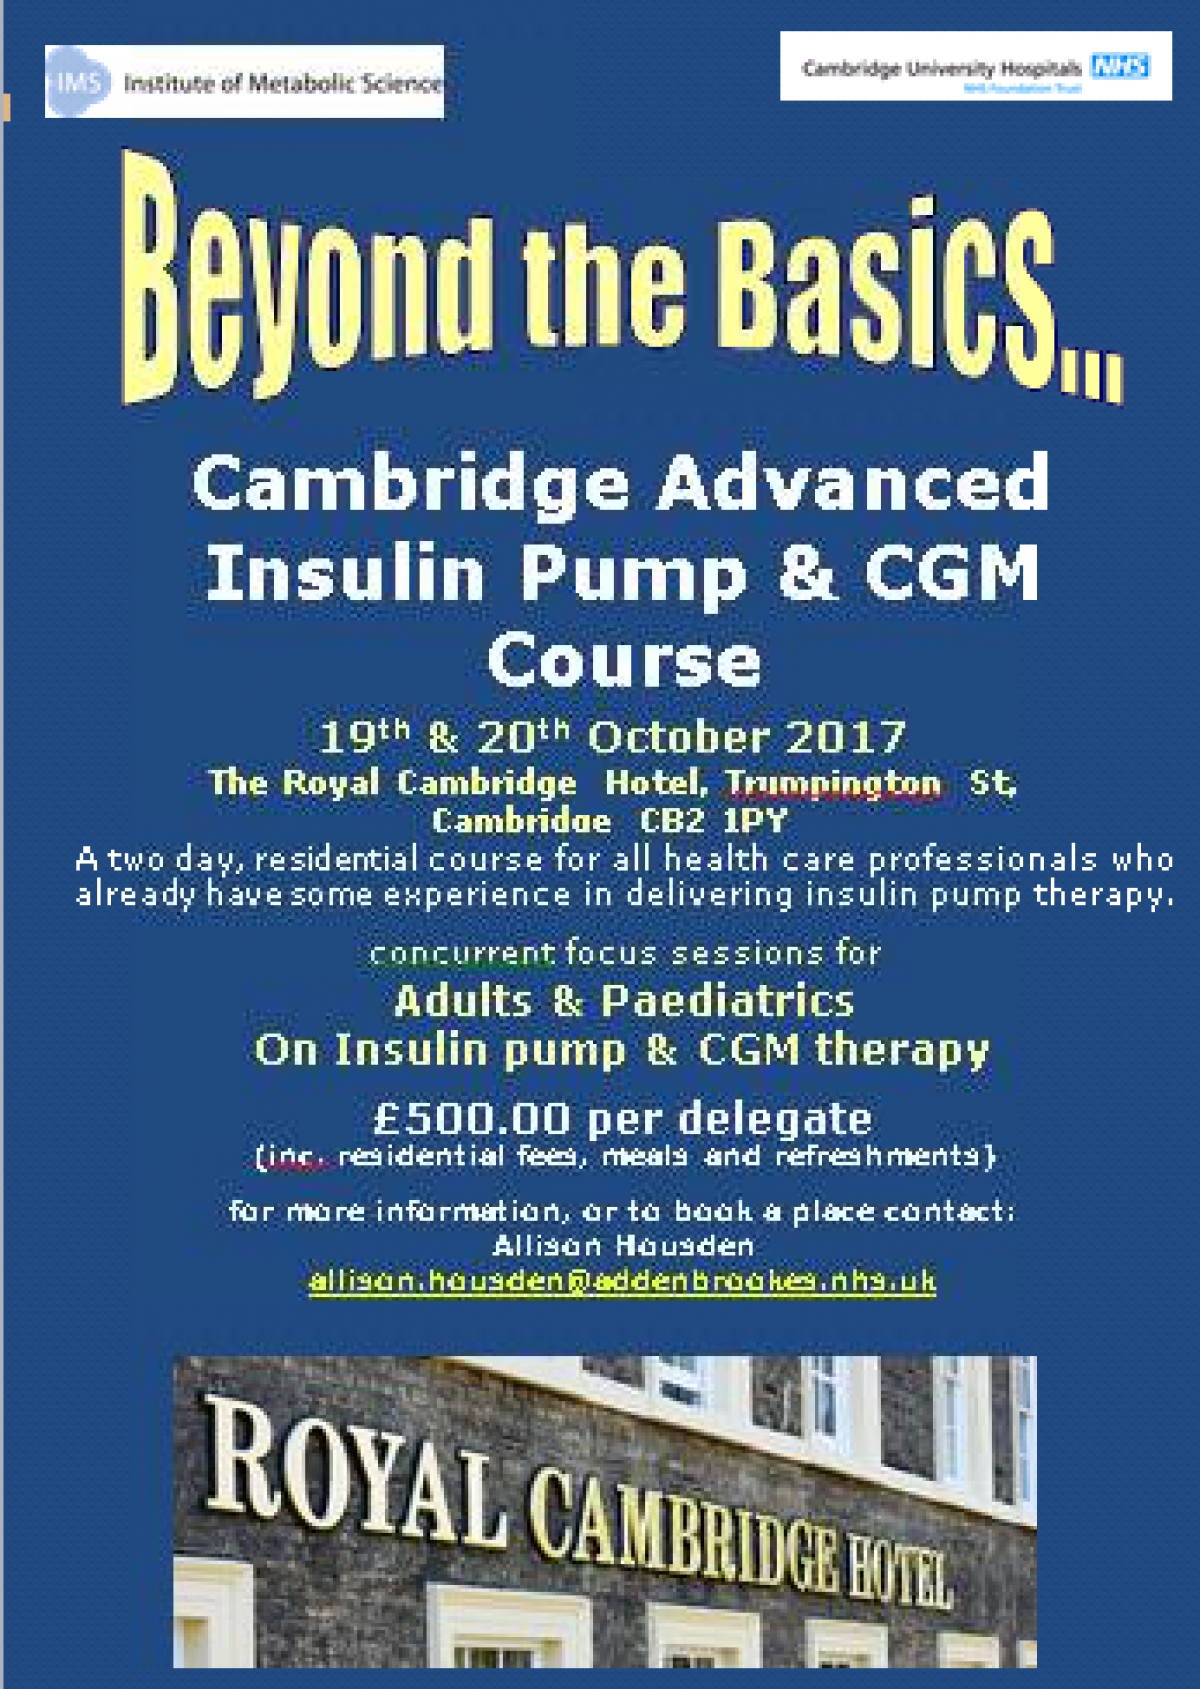 Cambridge Advanced Insulin Pump & CGM Course - 19th & 20th October 2017